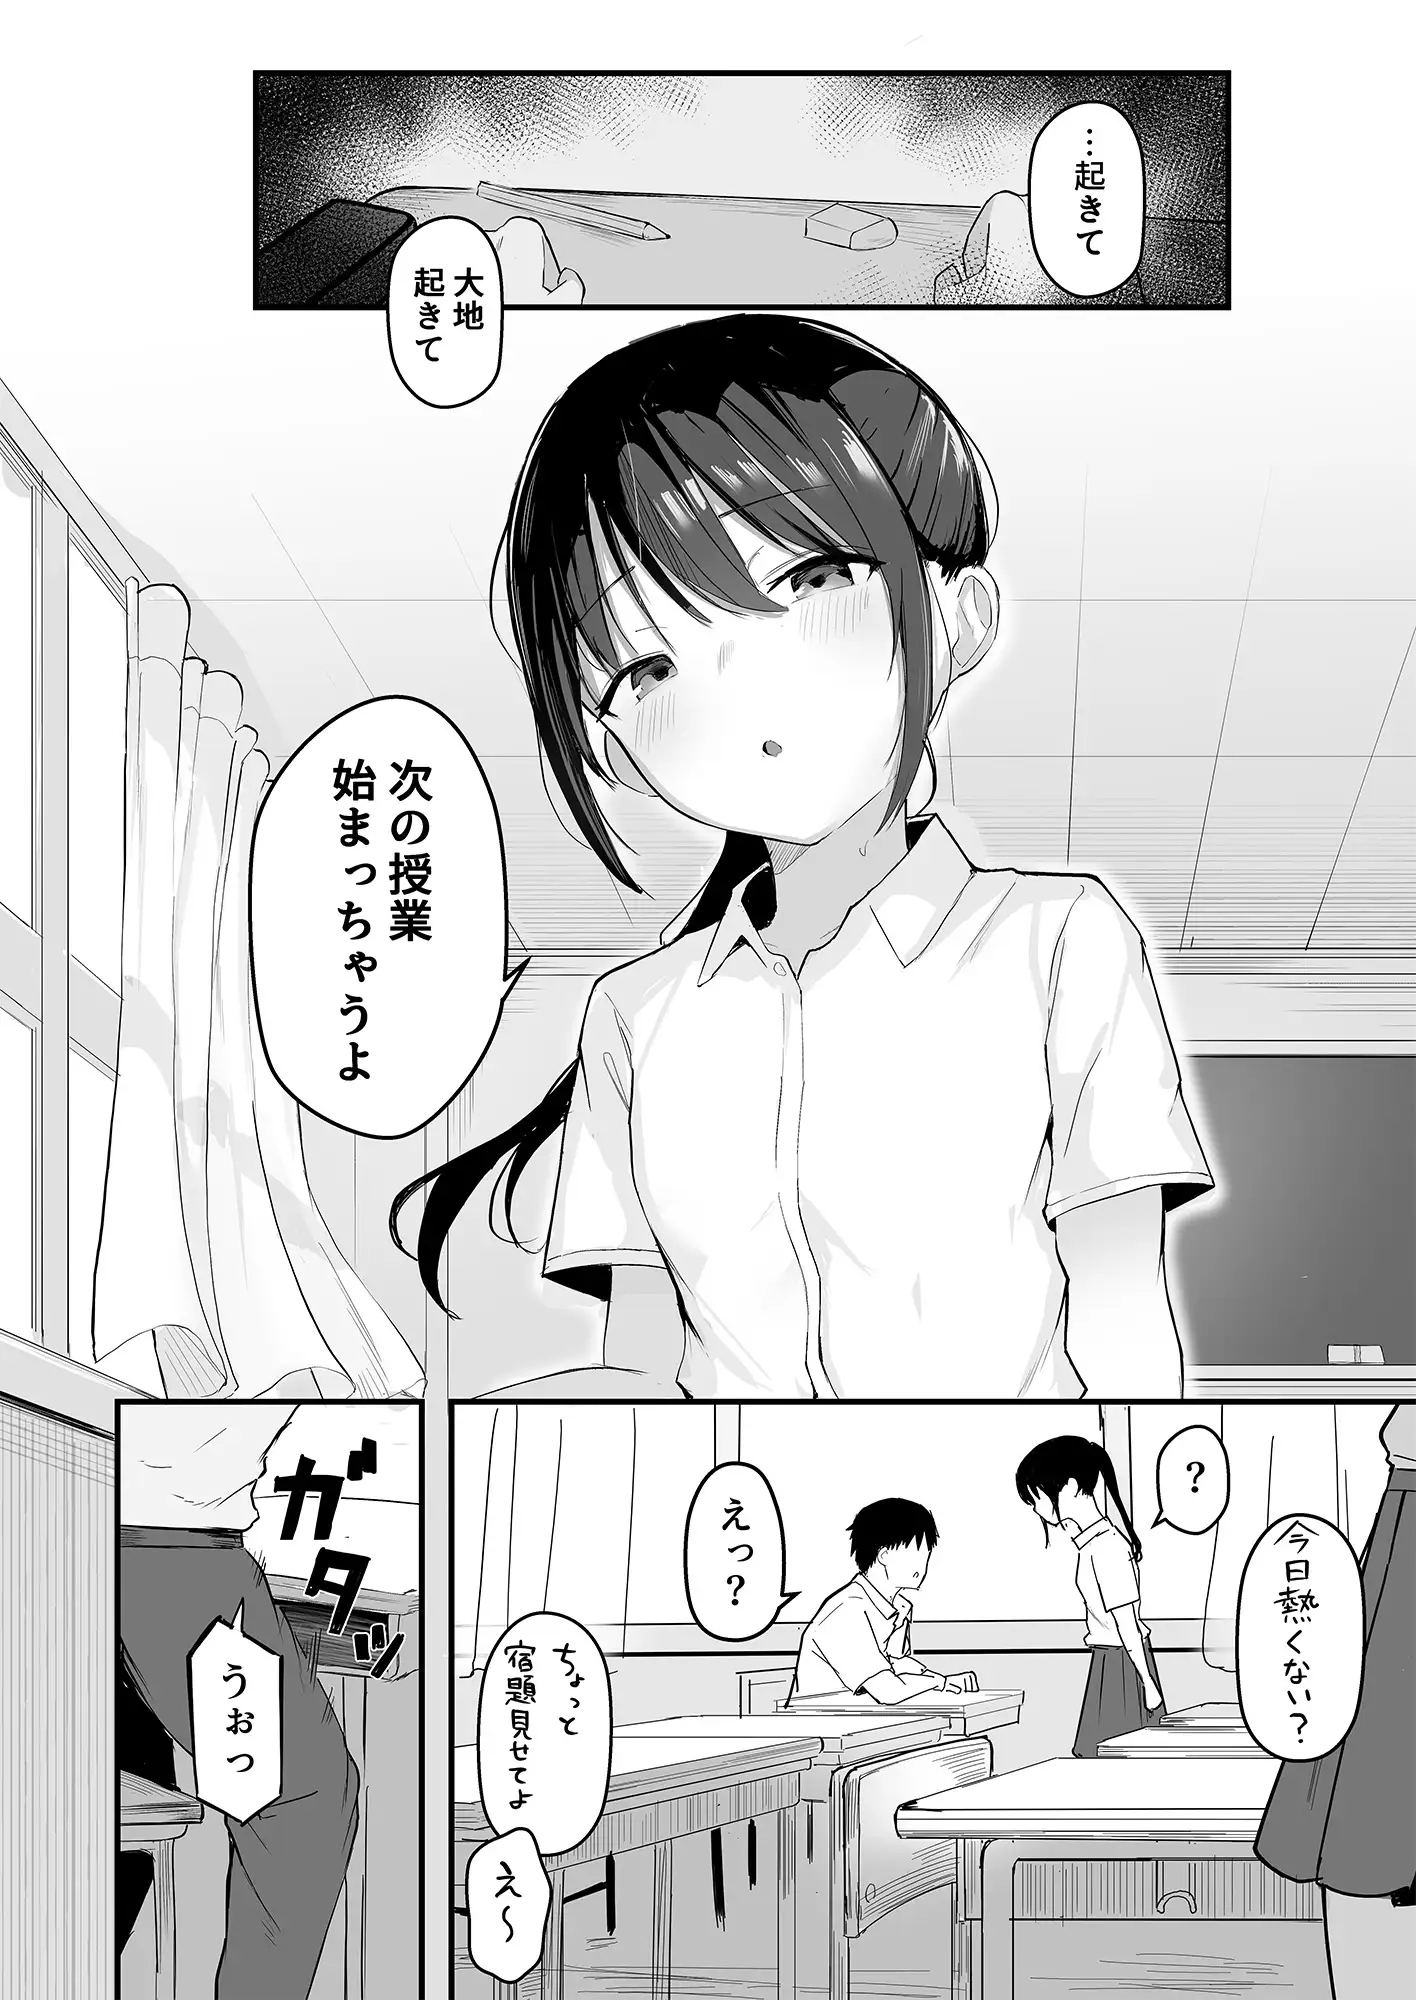 [red miso soup]青春をやり直すなら今度こそ好きだった同級生と付き合って絶対ヤリまくりたい。